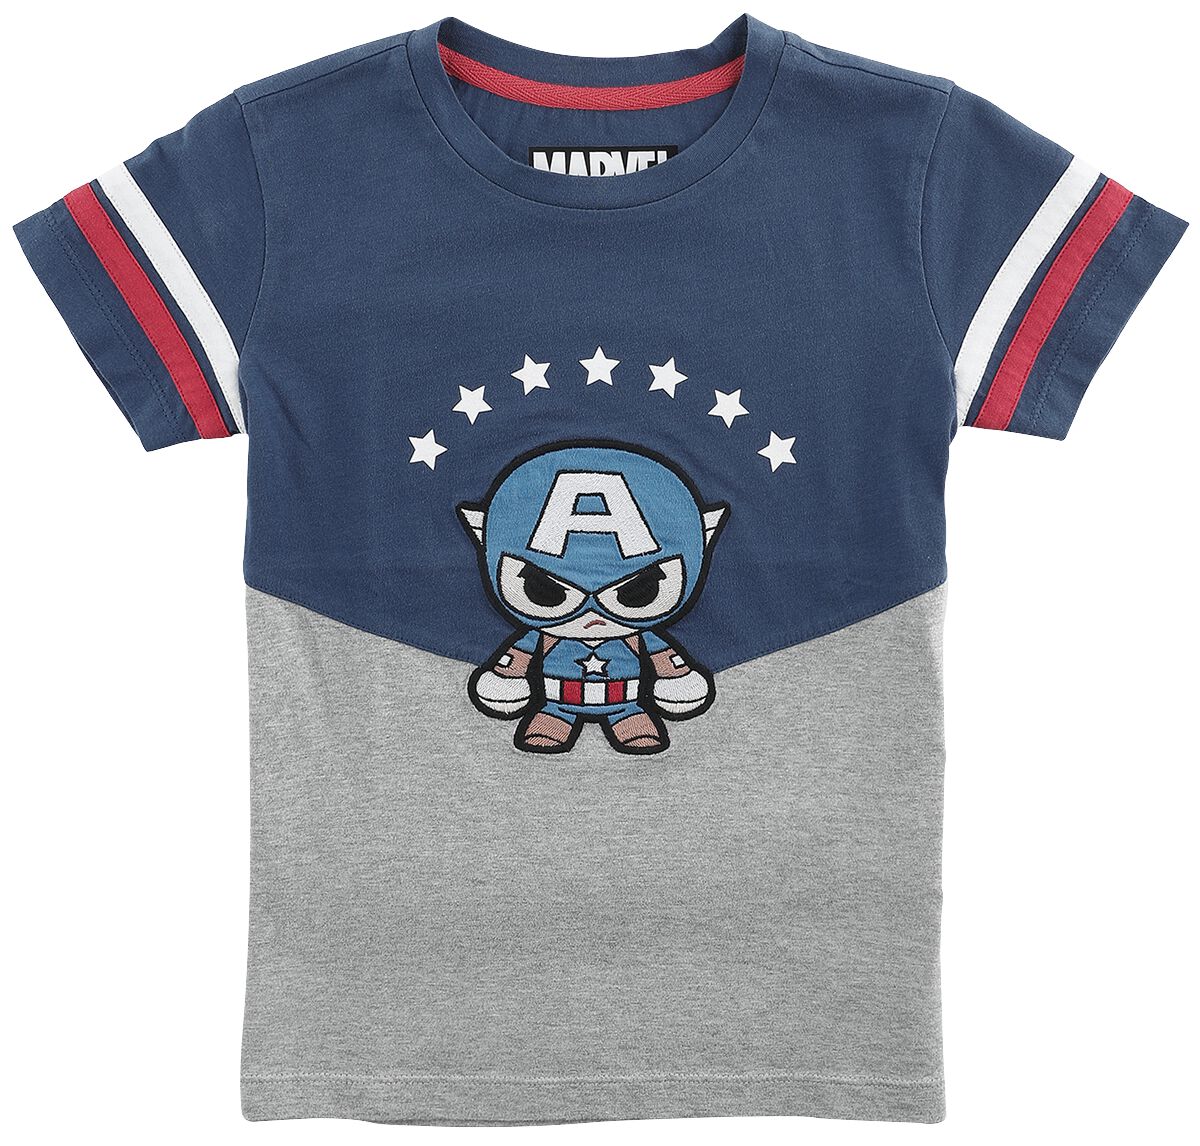 Captain America Captain America T-Shirt mottled grey blue